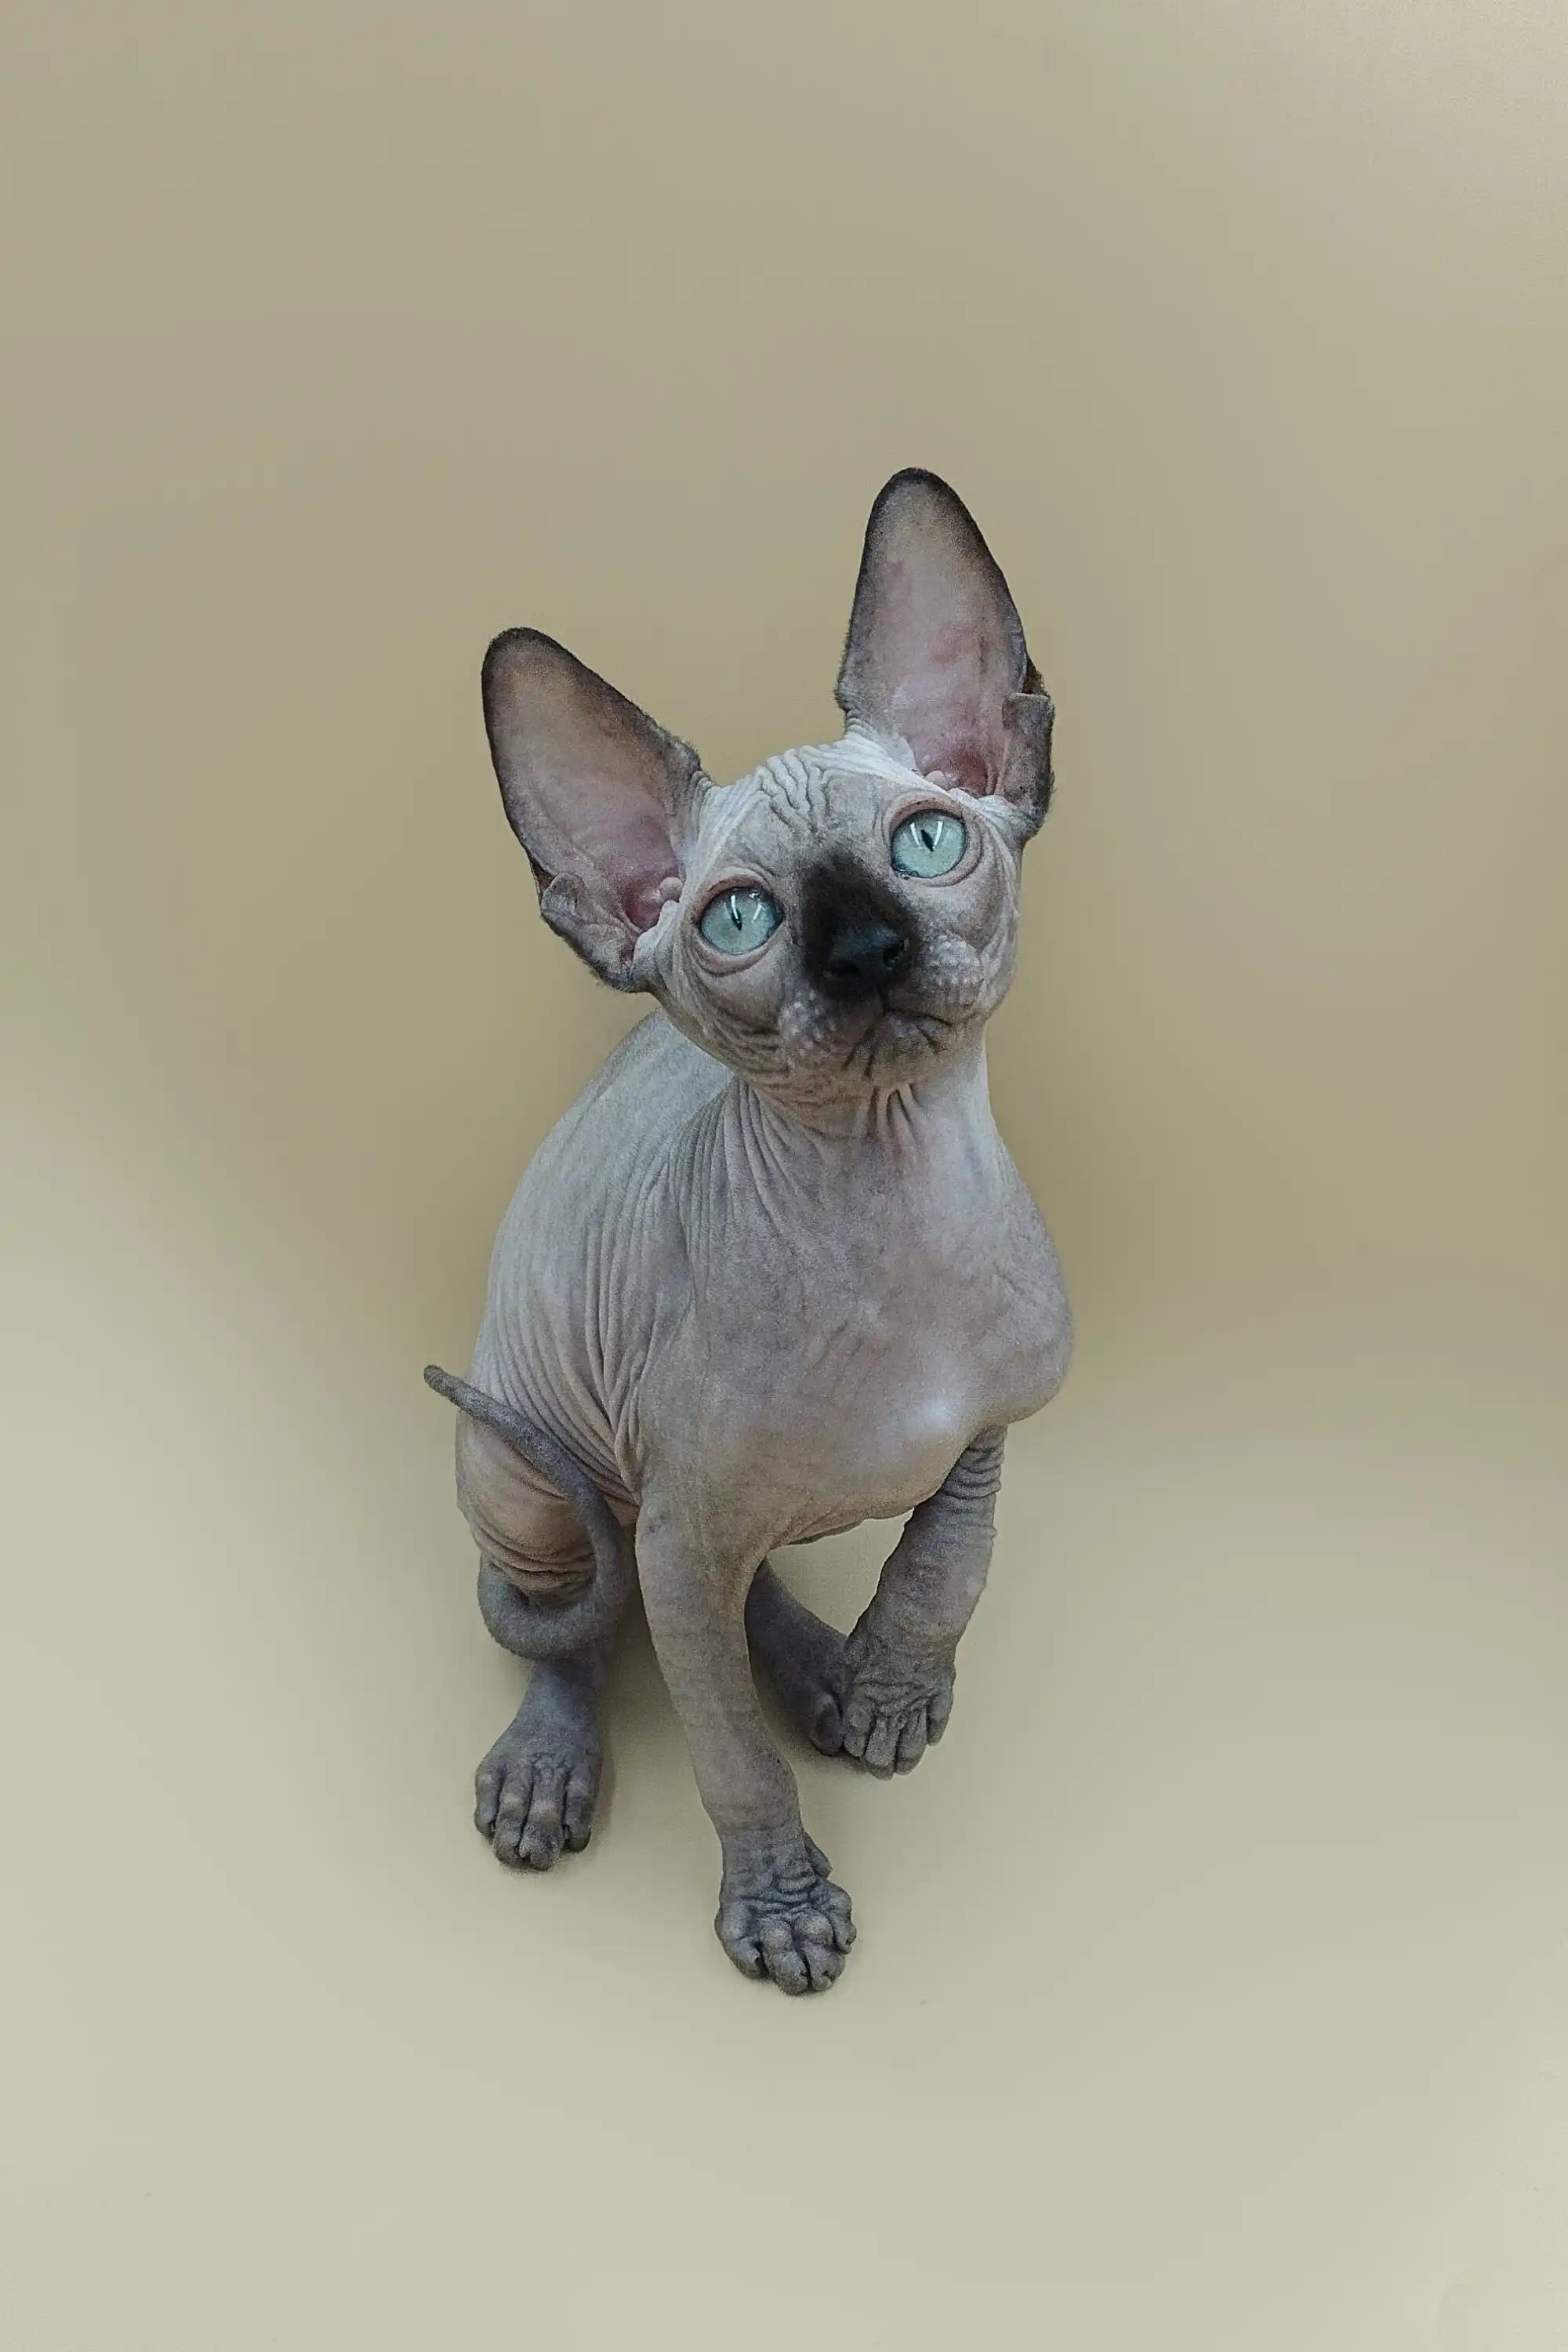 Sphynx Cats for Sale | Kittens For Iggy | Kitten